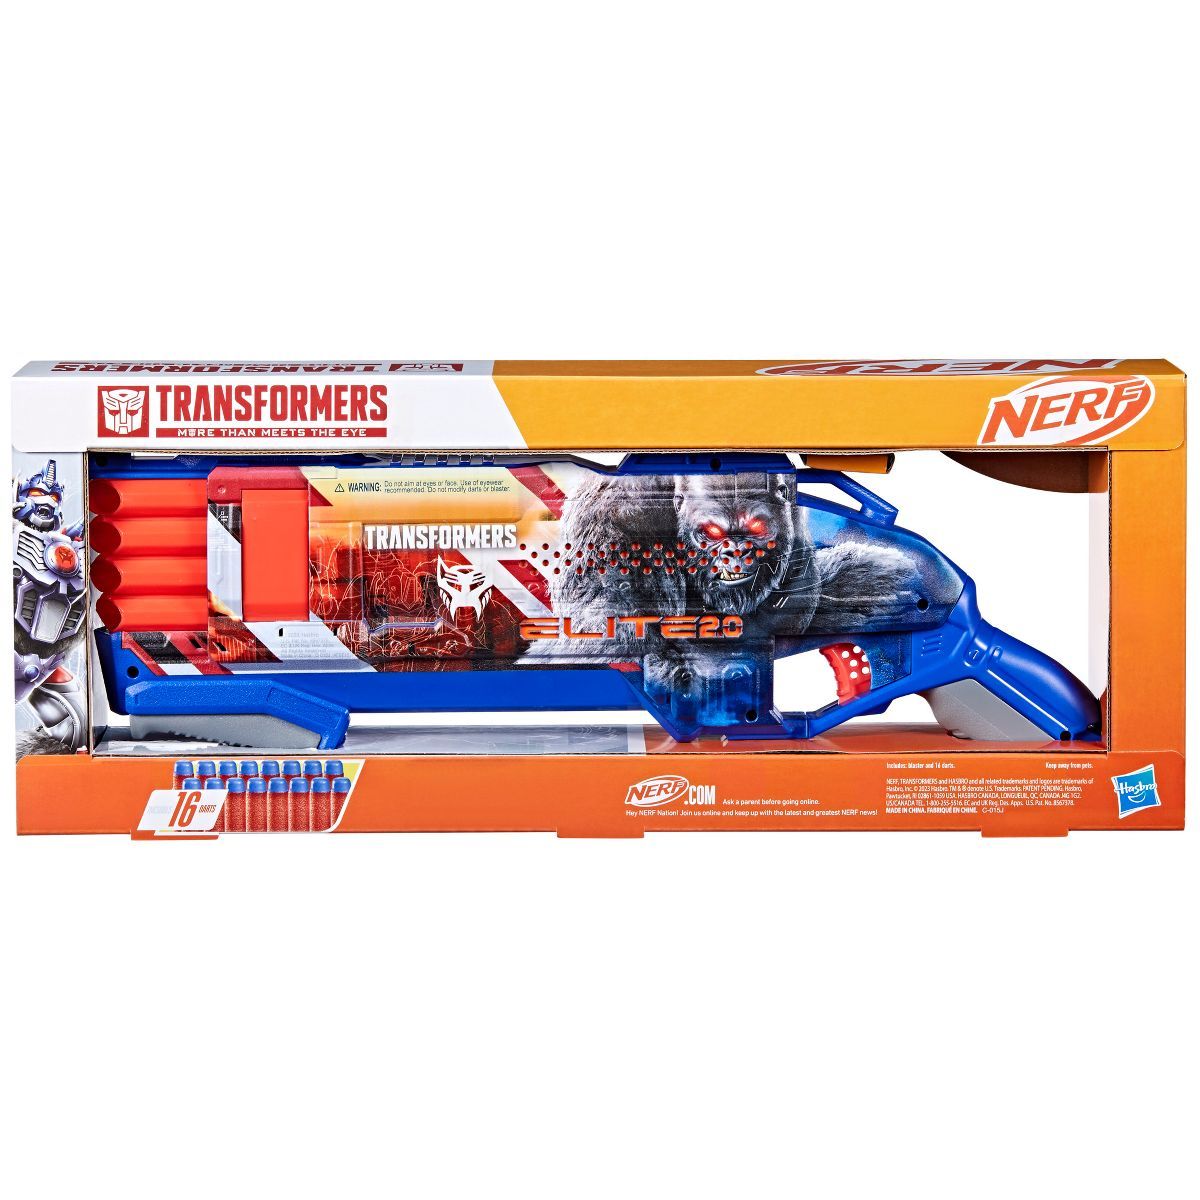 NERF Transformers Optimus Primal Dart Blaster | Target